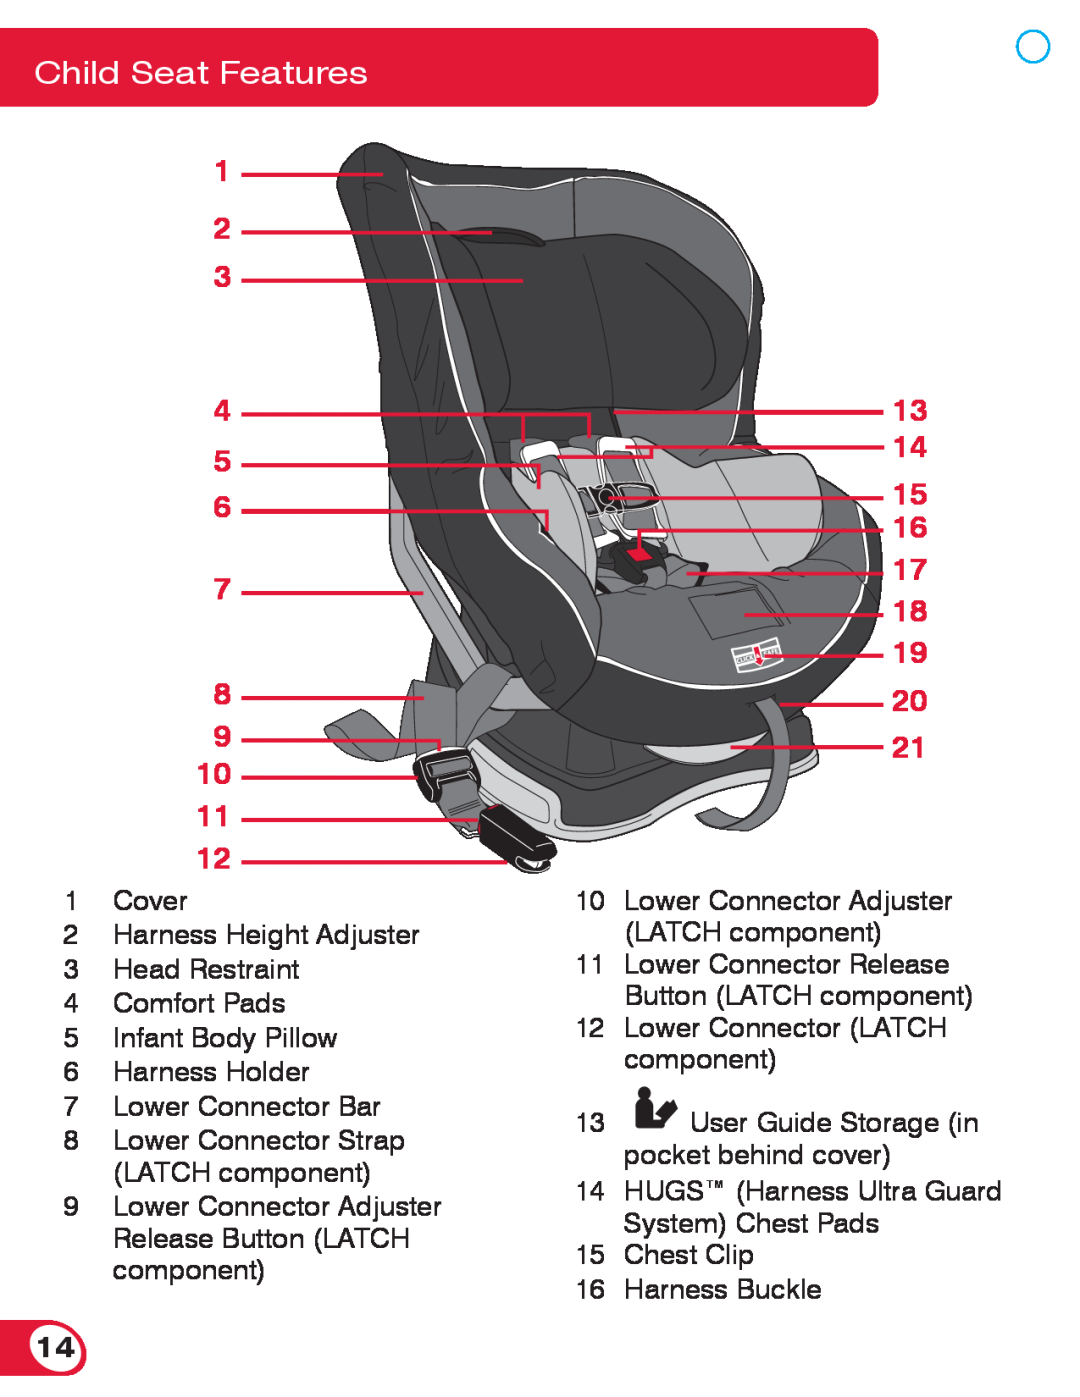 Britax 70 CS manual Child Seat Features, 17 18 